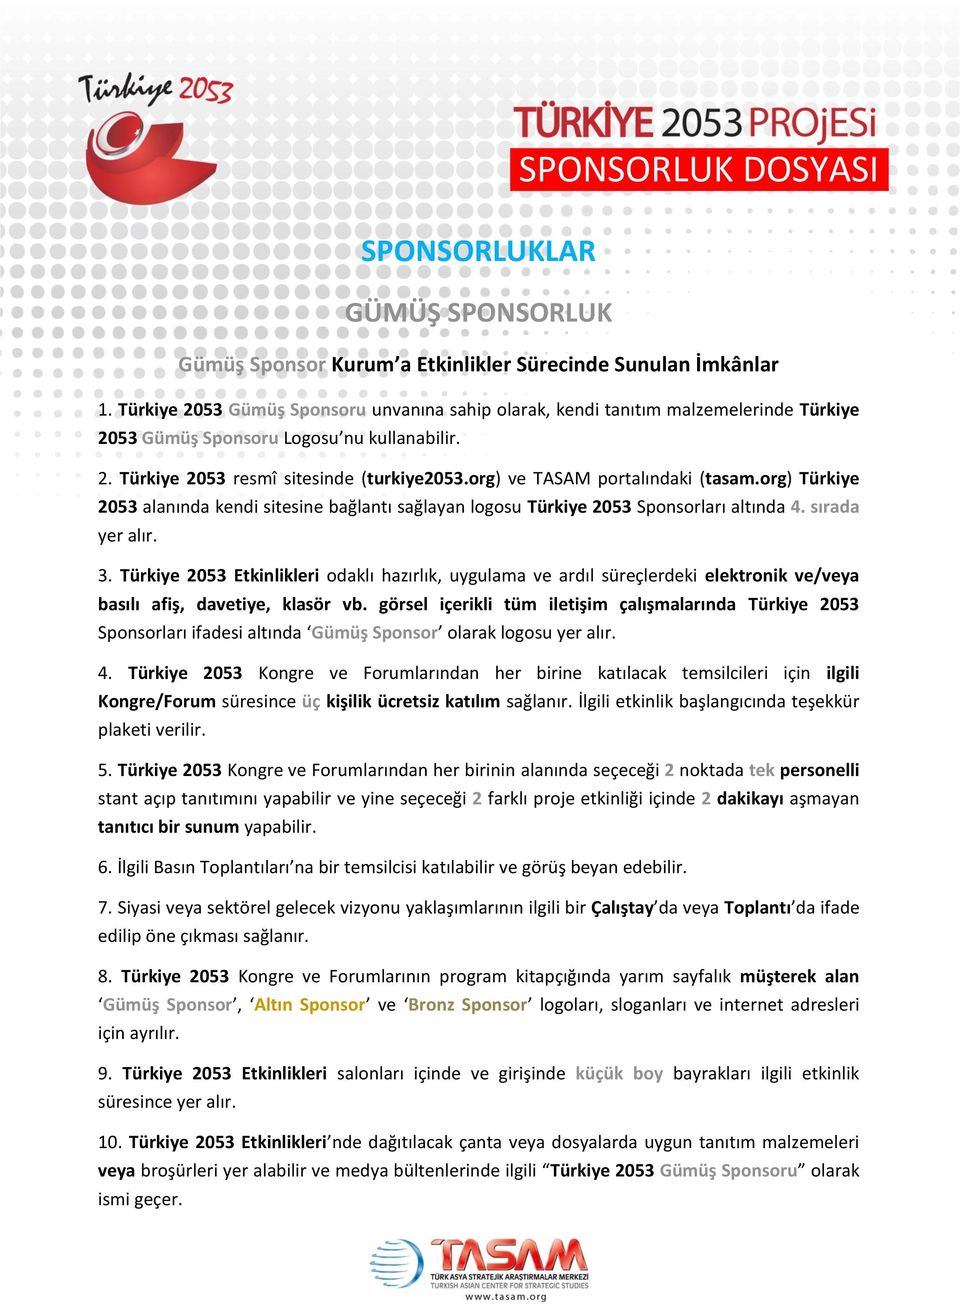 org) ve TASAM portalındaki (tasam.org) Türkiye 2053 alanında kendi sitesine bağlantı sağlayan logosu Türkiye 2053 Sponsorları altında 4. sırada 3.